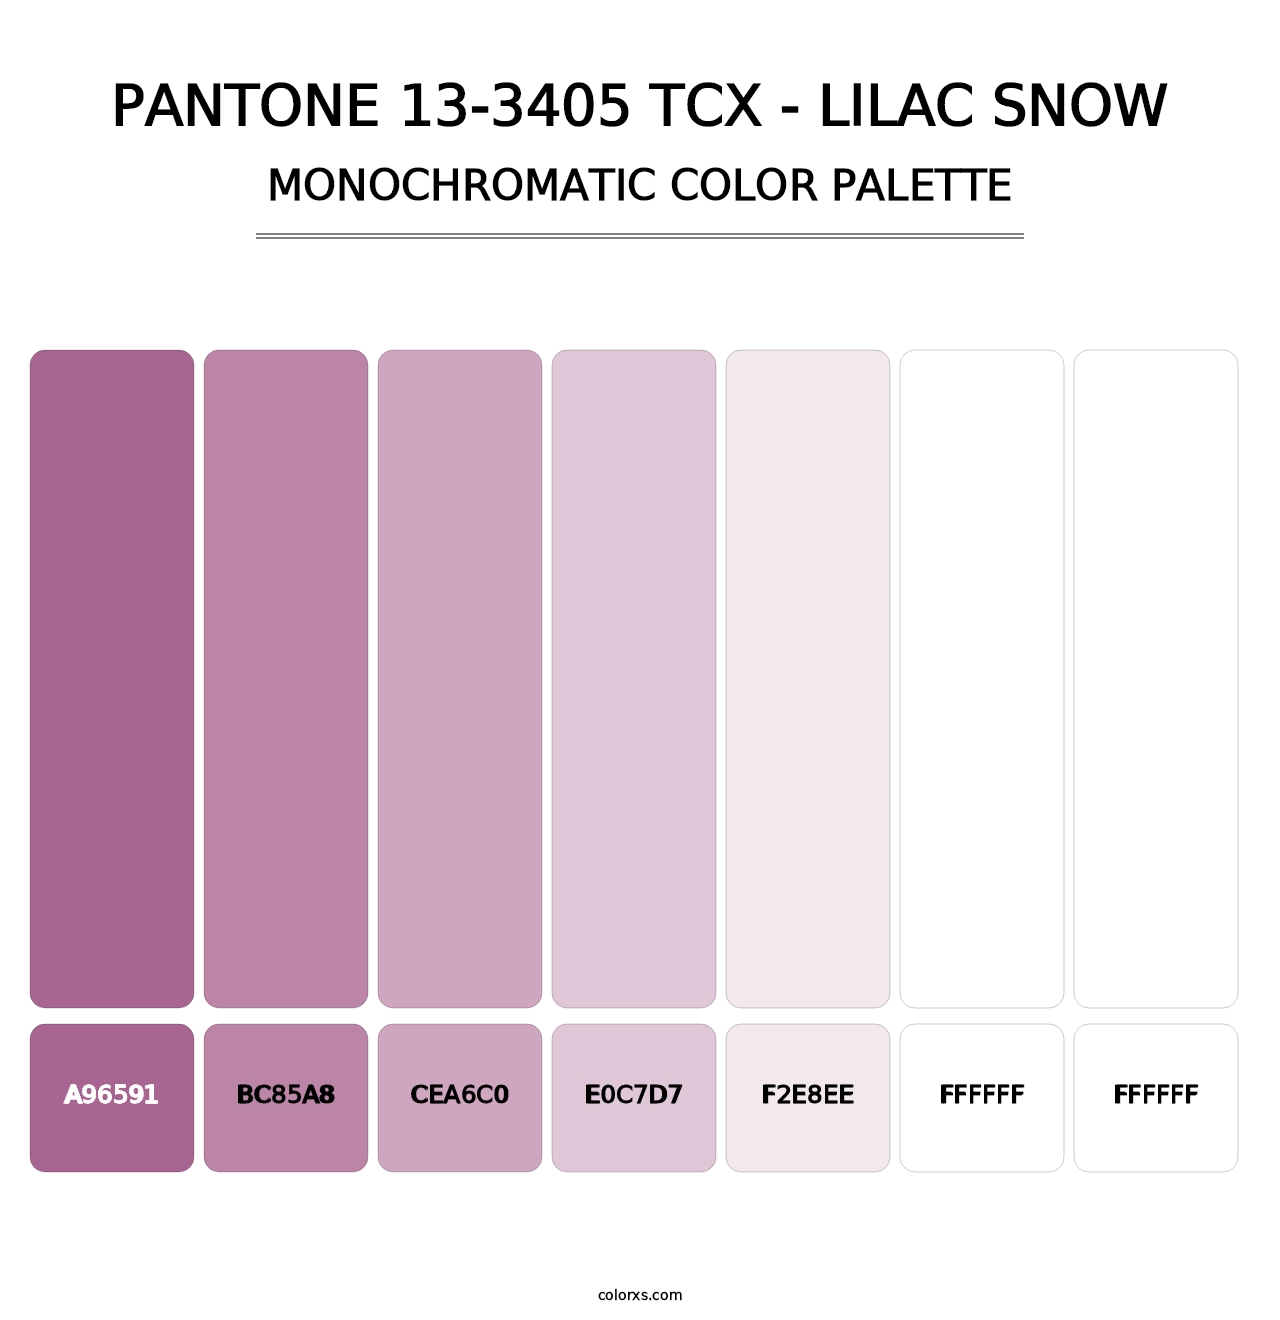 PANTONE 13-3405 TCX - Lilac Snow - Monochromatic Color Palette